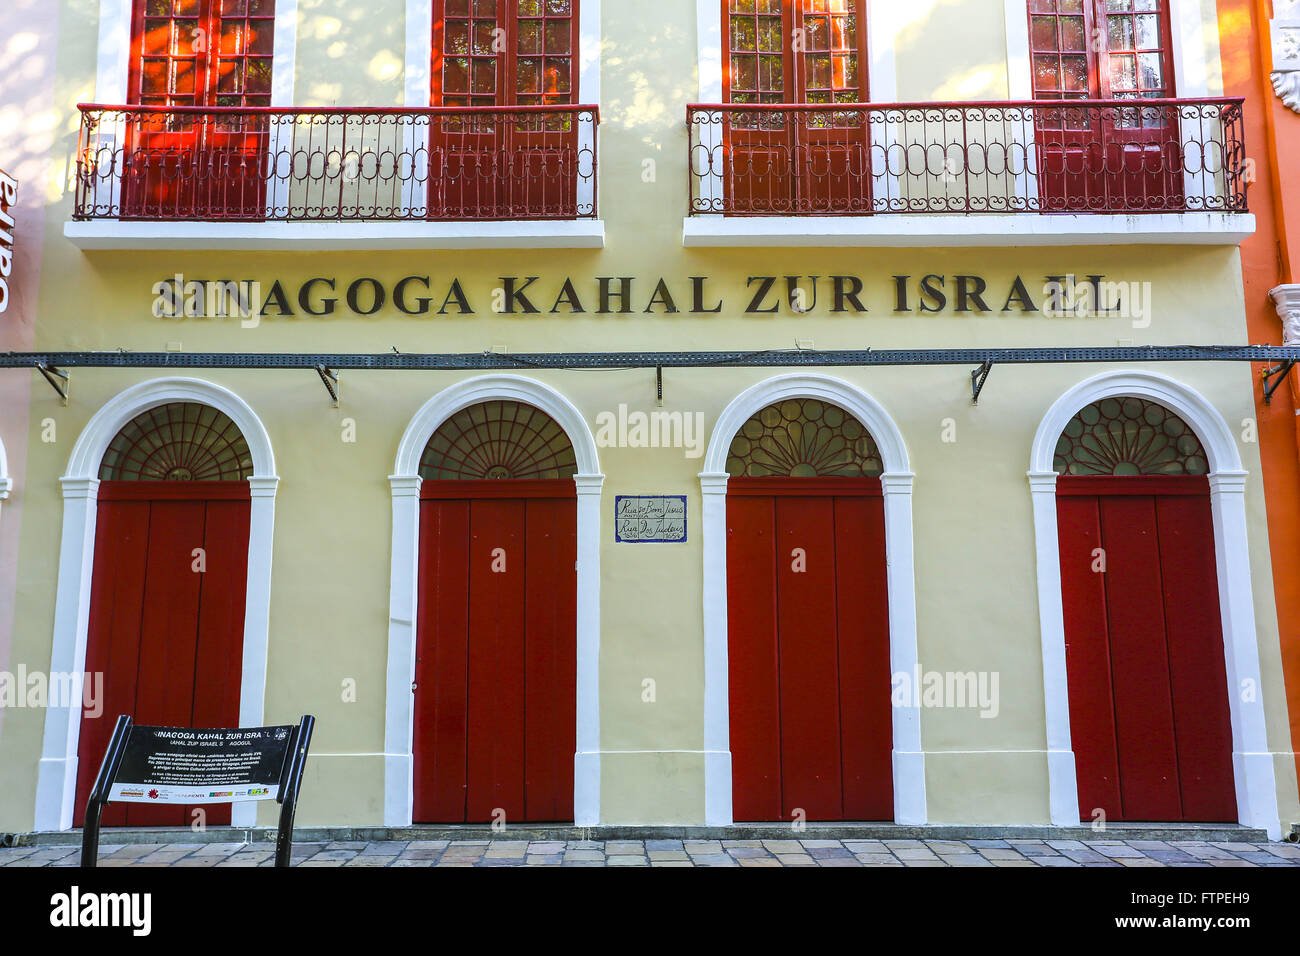 Ebraica Centro Culturale di Pernambuco - vecchio Kahal Zur Israele Sinagoga a destra Foto Stock